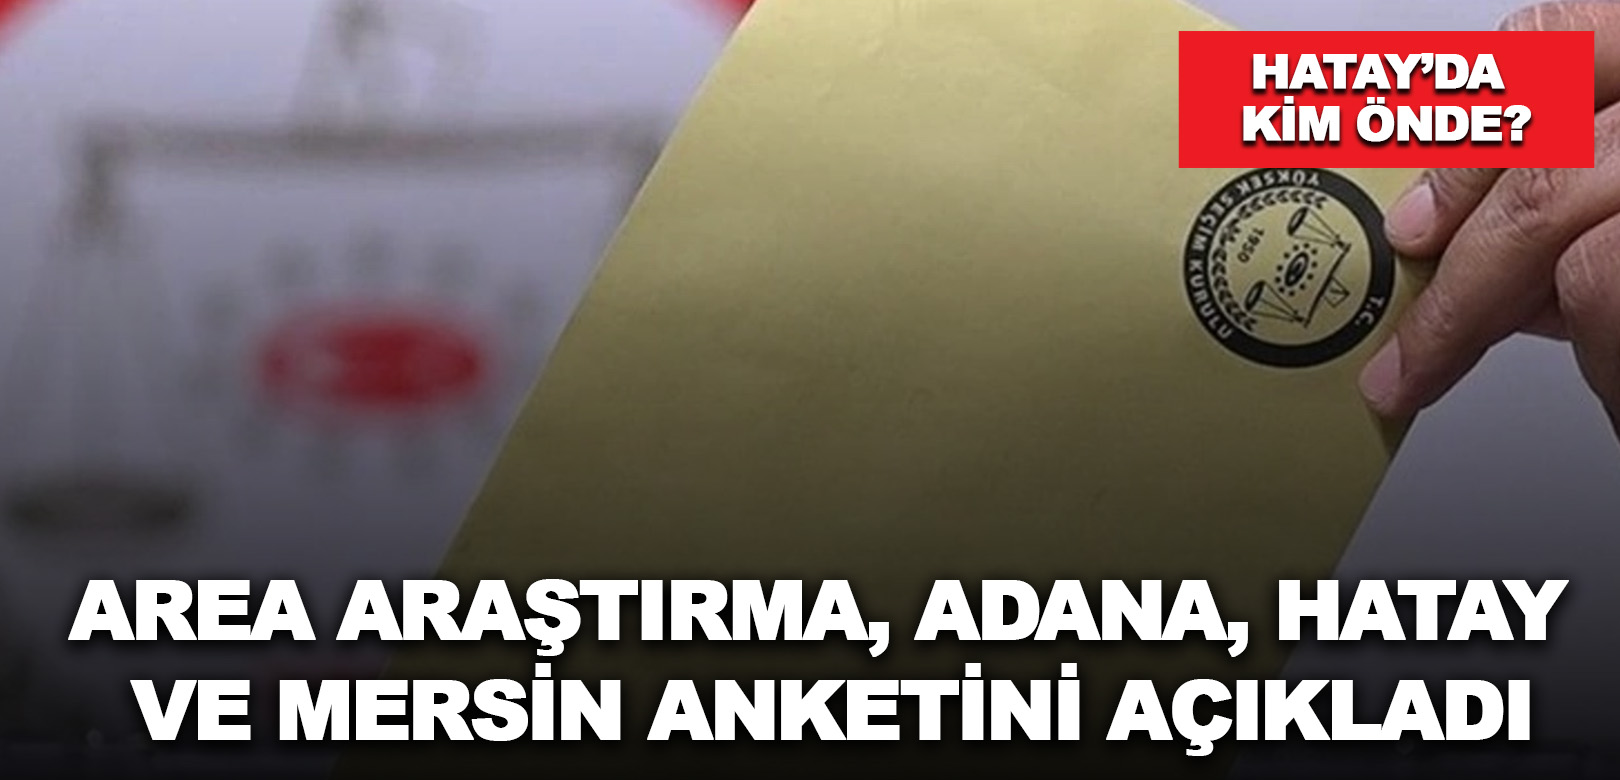 AREA Araştırma, Adana, Hatay ve Mersin anketini açıkladı: Hatay’da kim önde?